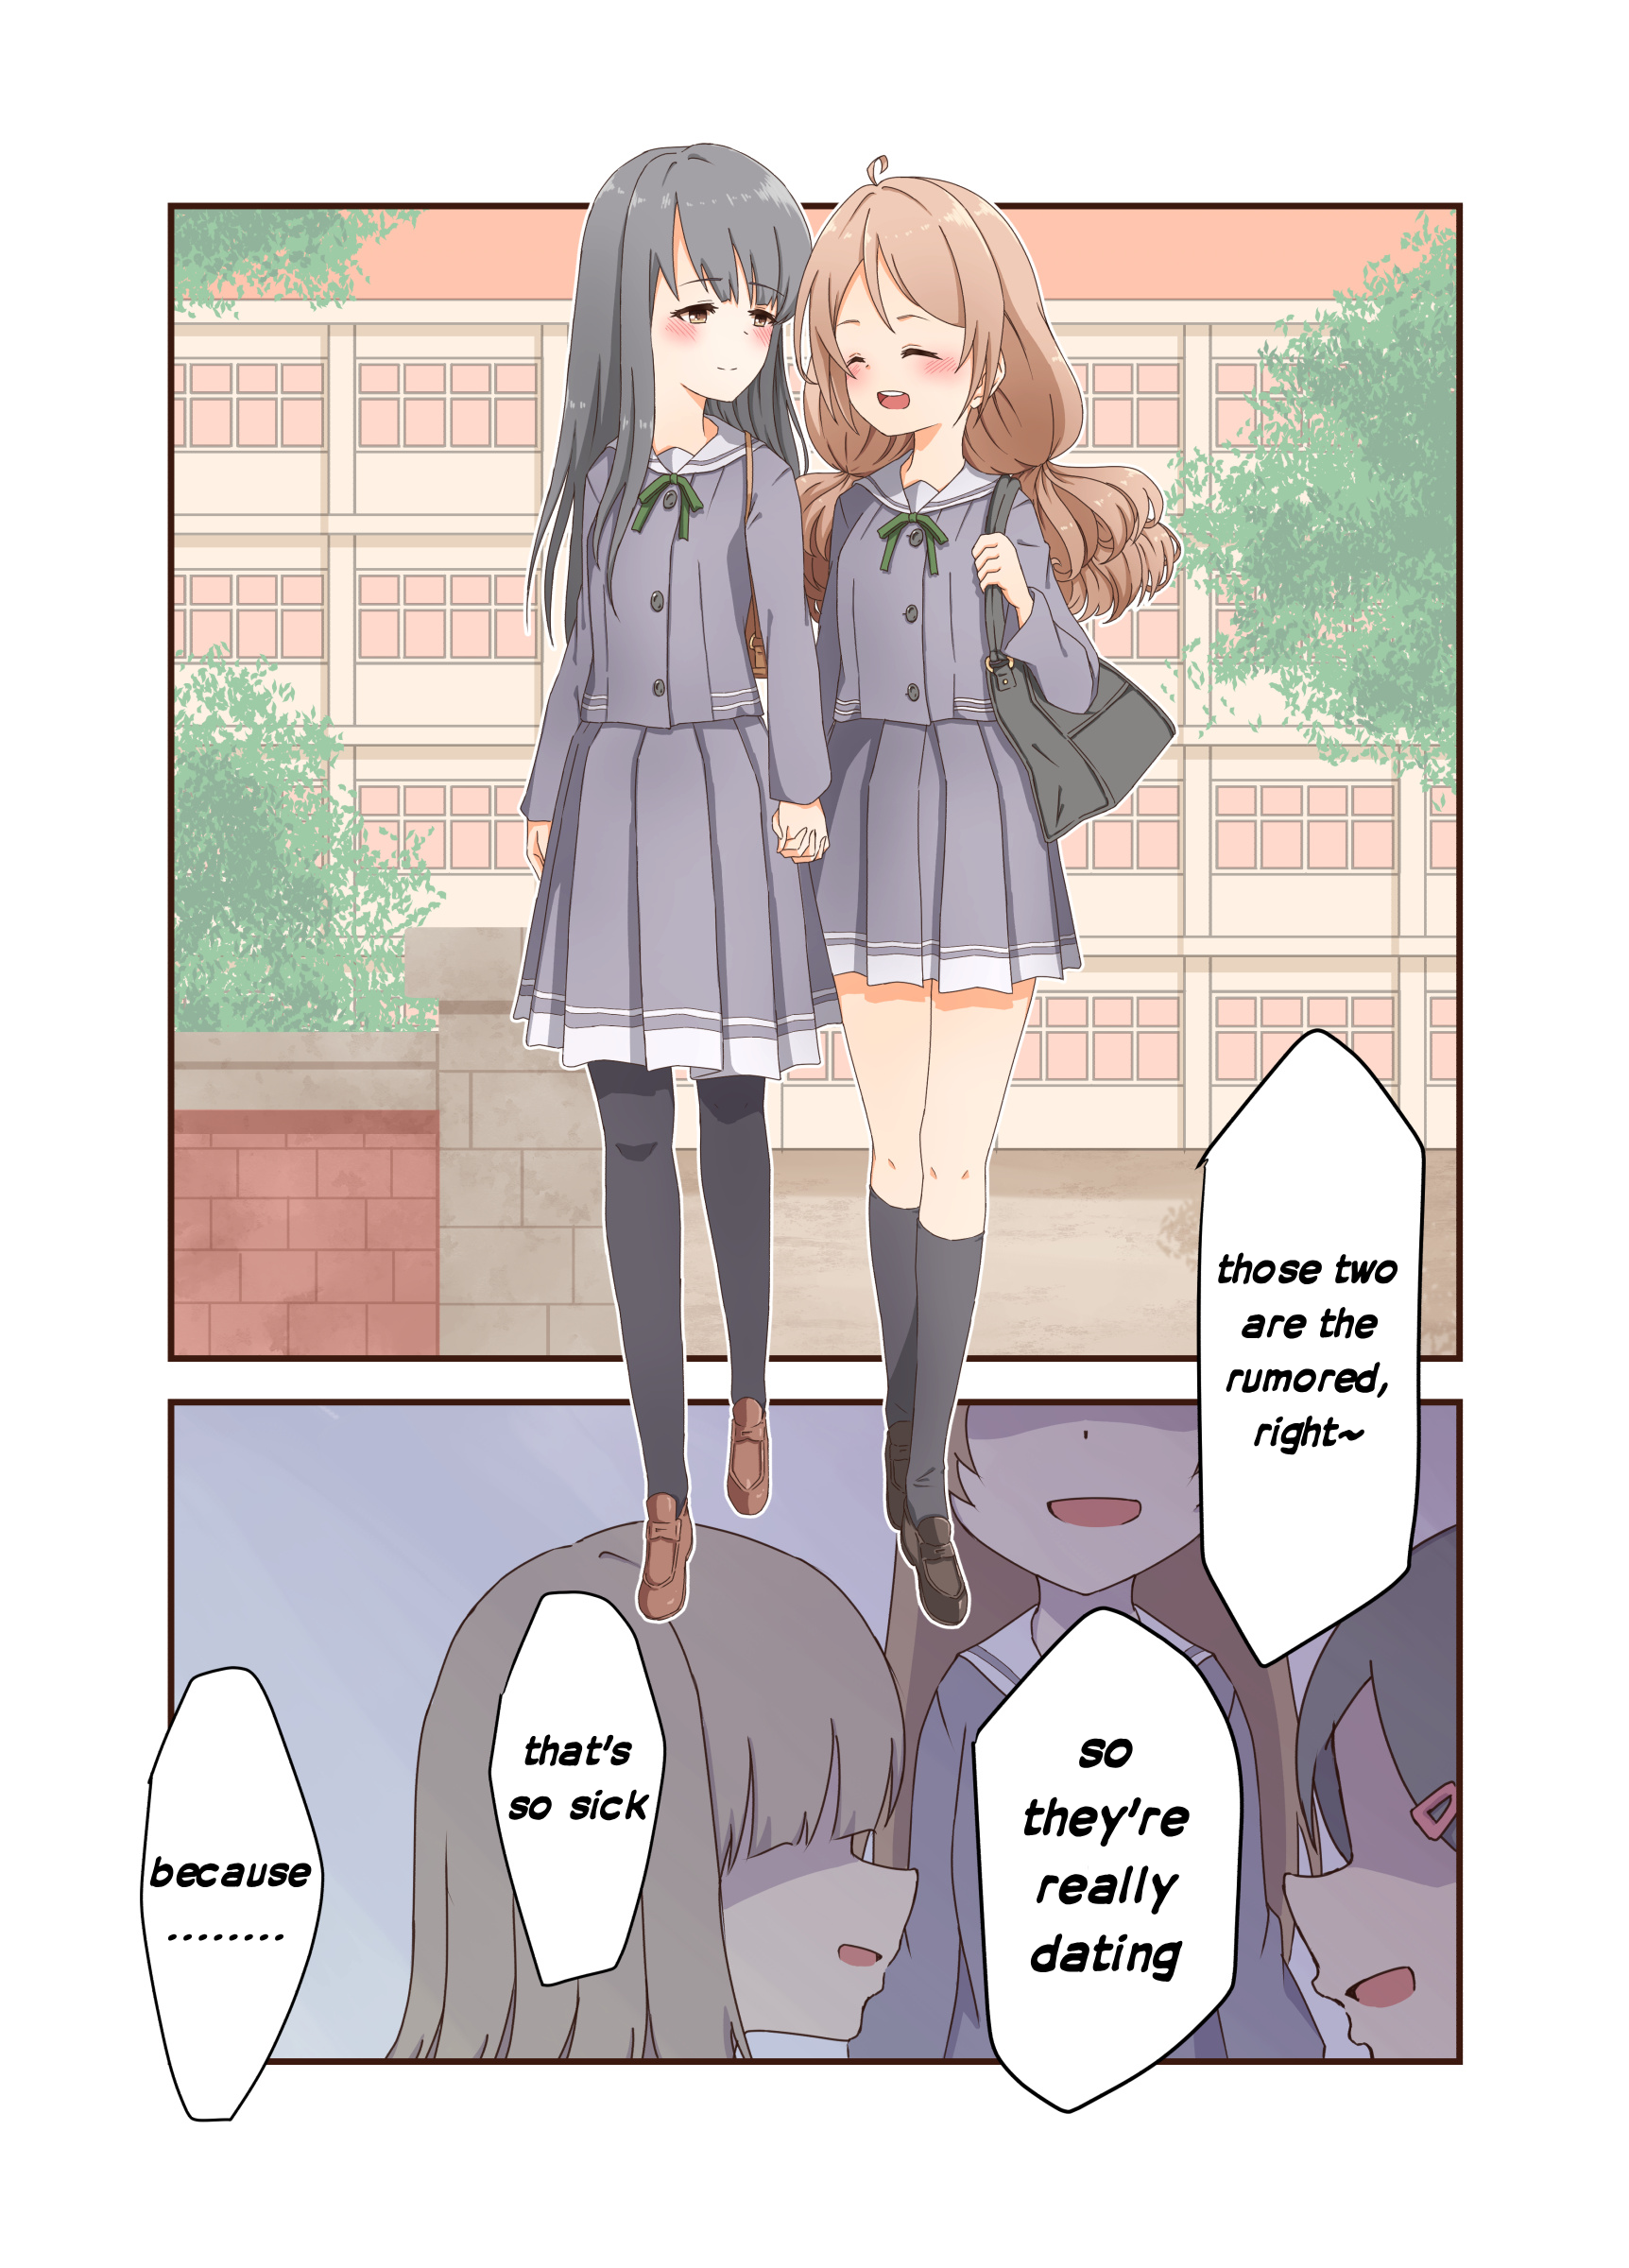 Heiwa Na Yuri Manga Series - Page 1